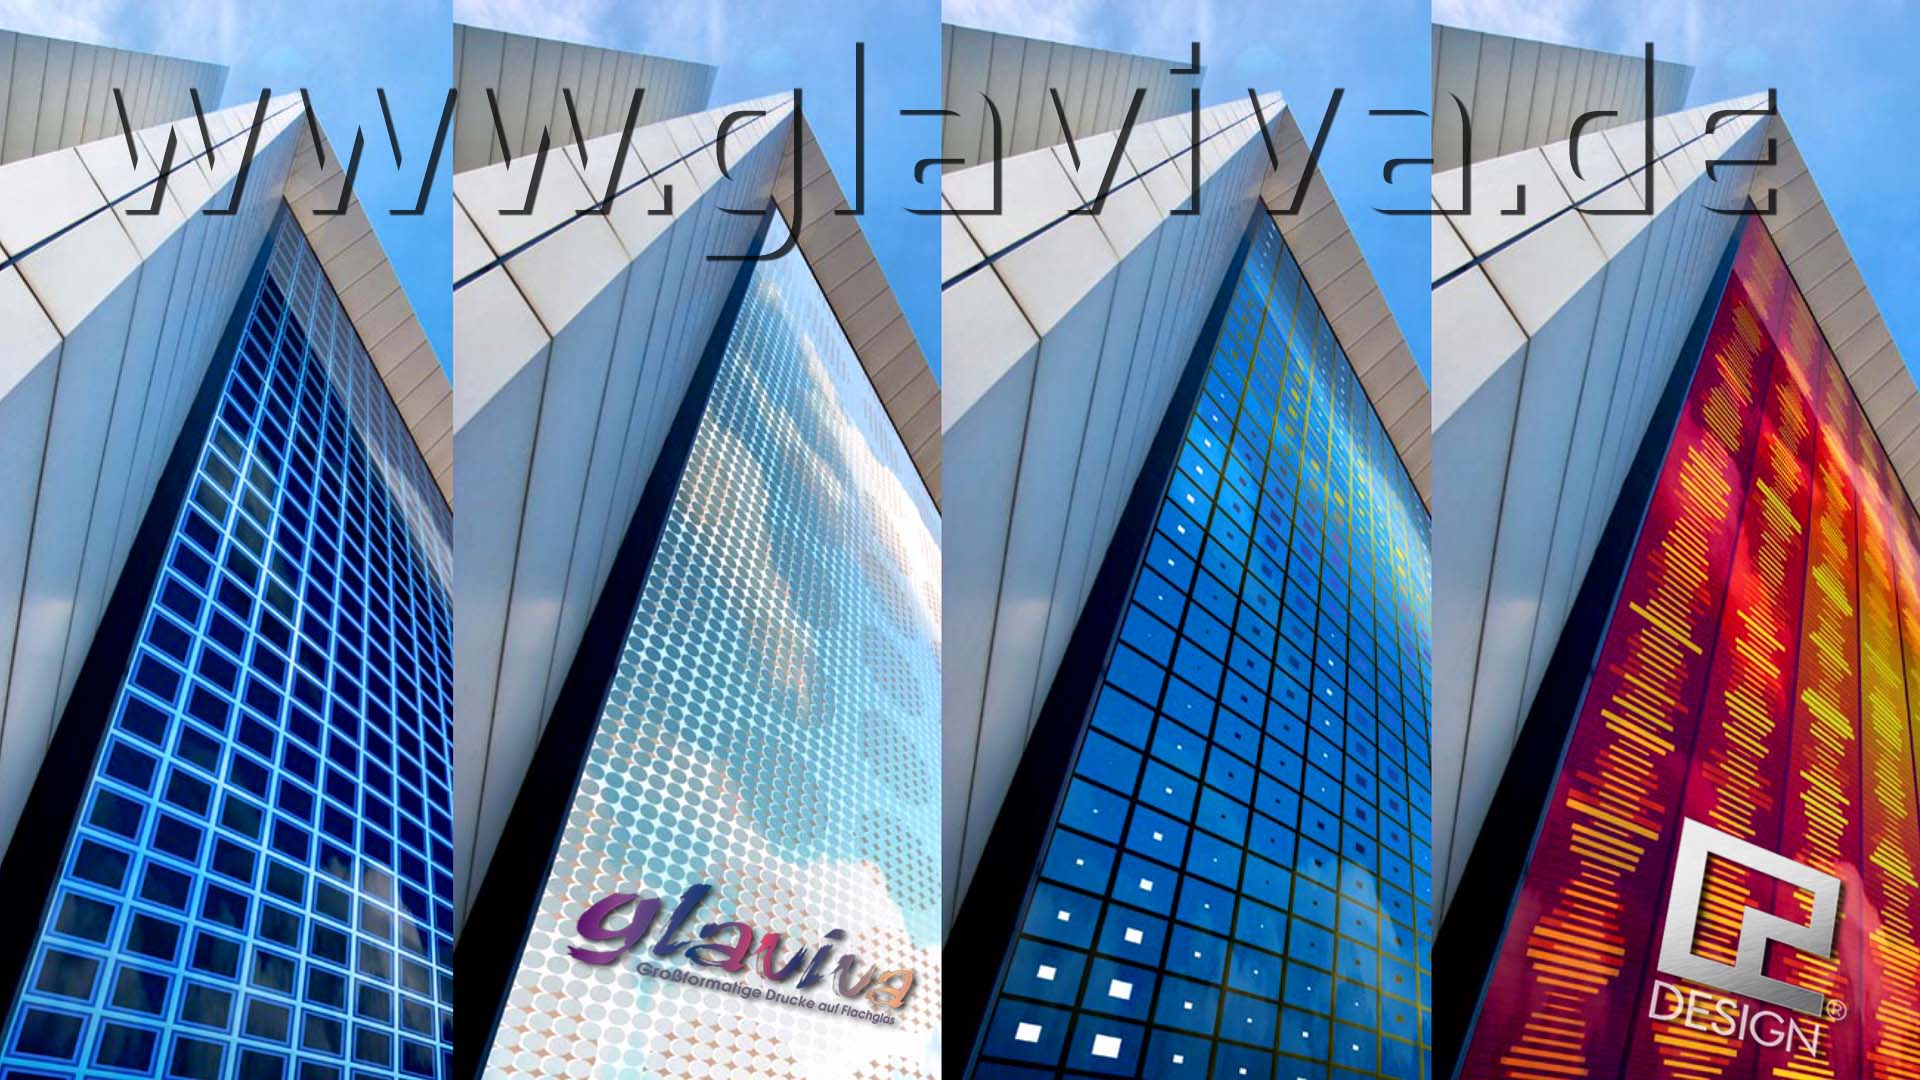 GLAVIVA • Digitaldruck auf Glas mit C2 Design - Glasgestaltung für Architekten • Glasfassaden